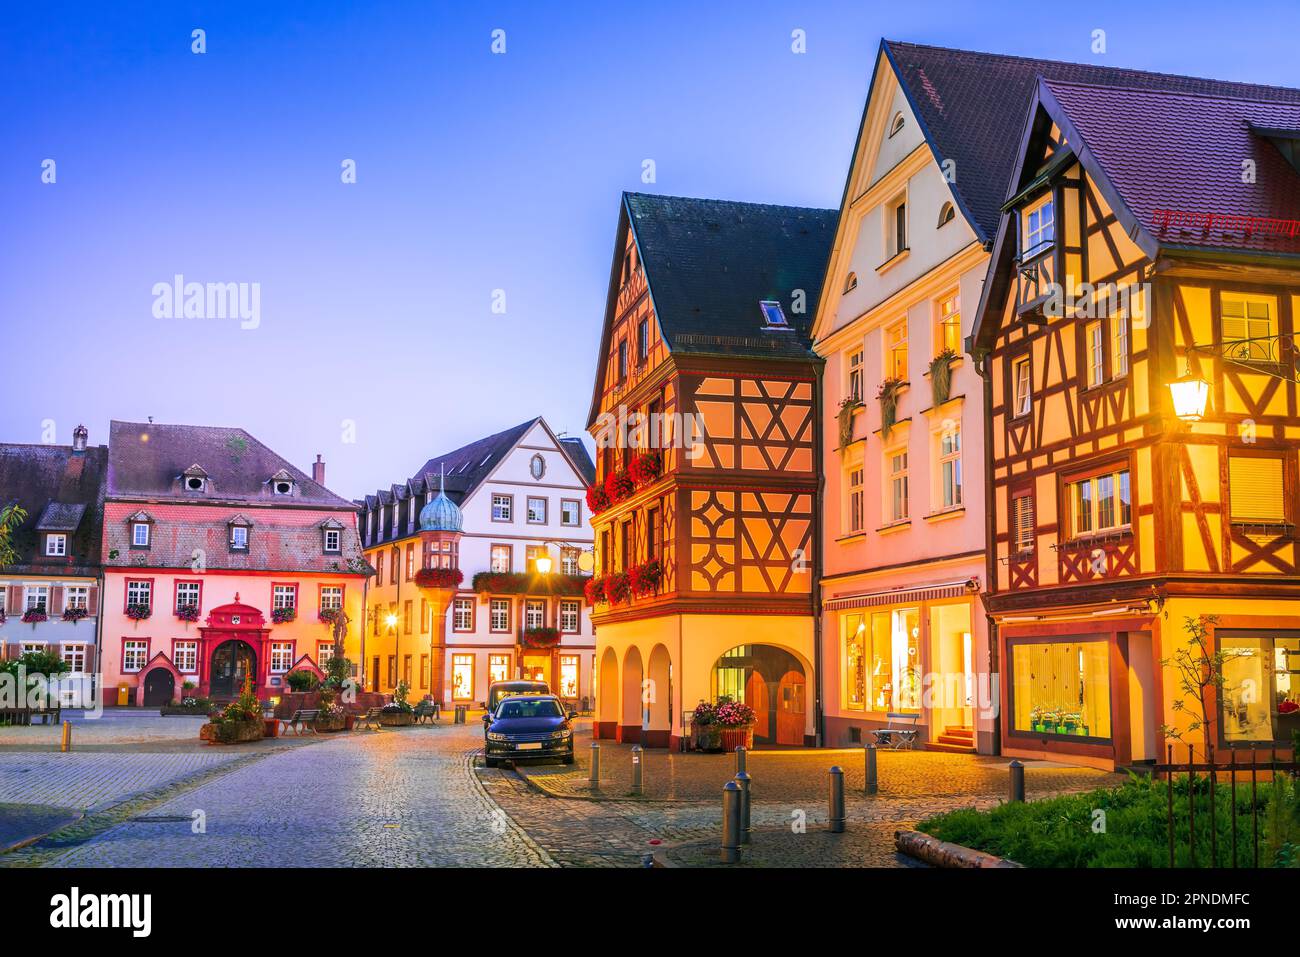 Gengenbach, Allemagne. Altstadt Blue Hour illuminé, toile de fond magique pour les bâtiments pittoresques de la ville. Fond de voyage Forêt noire. Banque D'Images